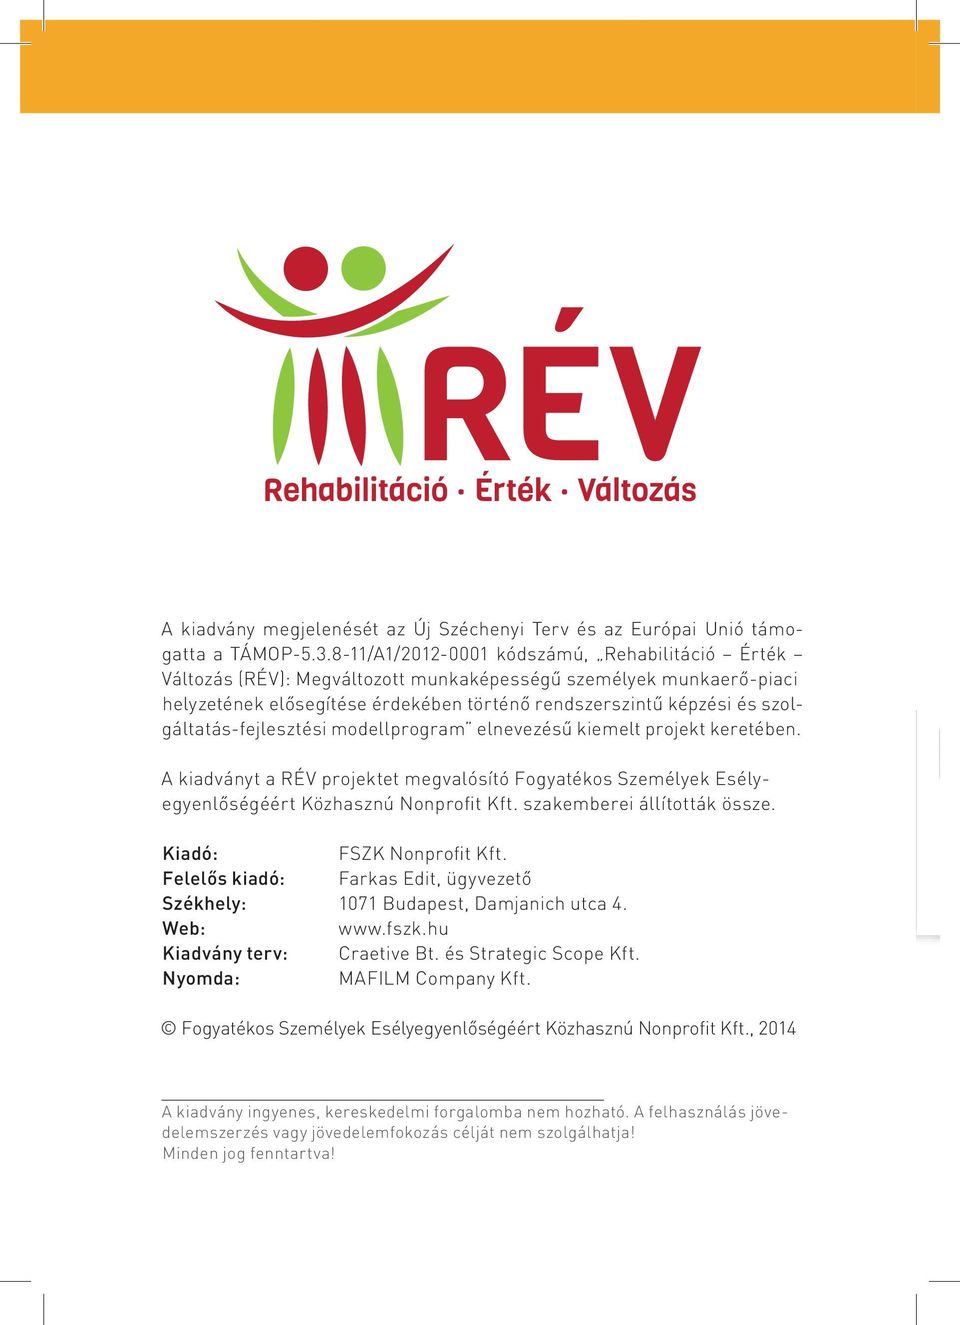 szolgáltatás-fejlesztési modellprogram elnevezésű kiemelt projekt keretében. A kiadványt a RÉV projektet megvalósító Fogyatékos Személyek Esélyegyenlőségéért Közhasznú Nonprofit Kft.